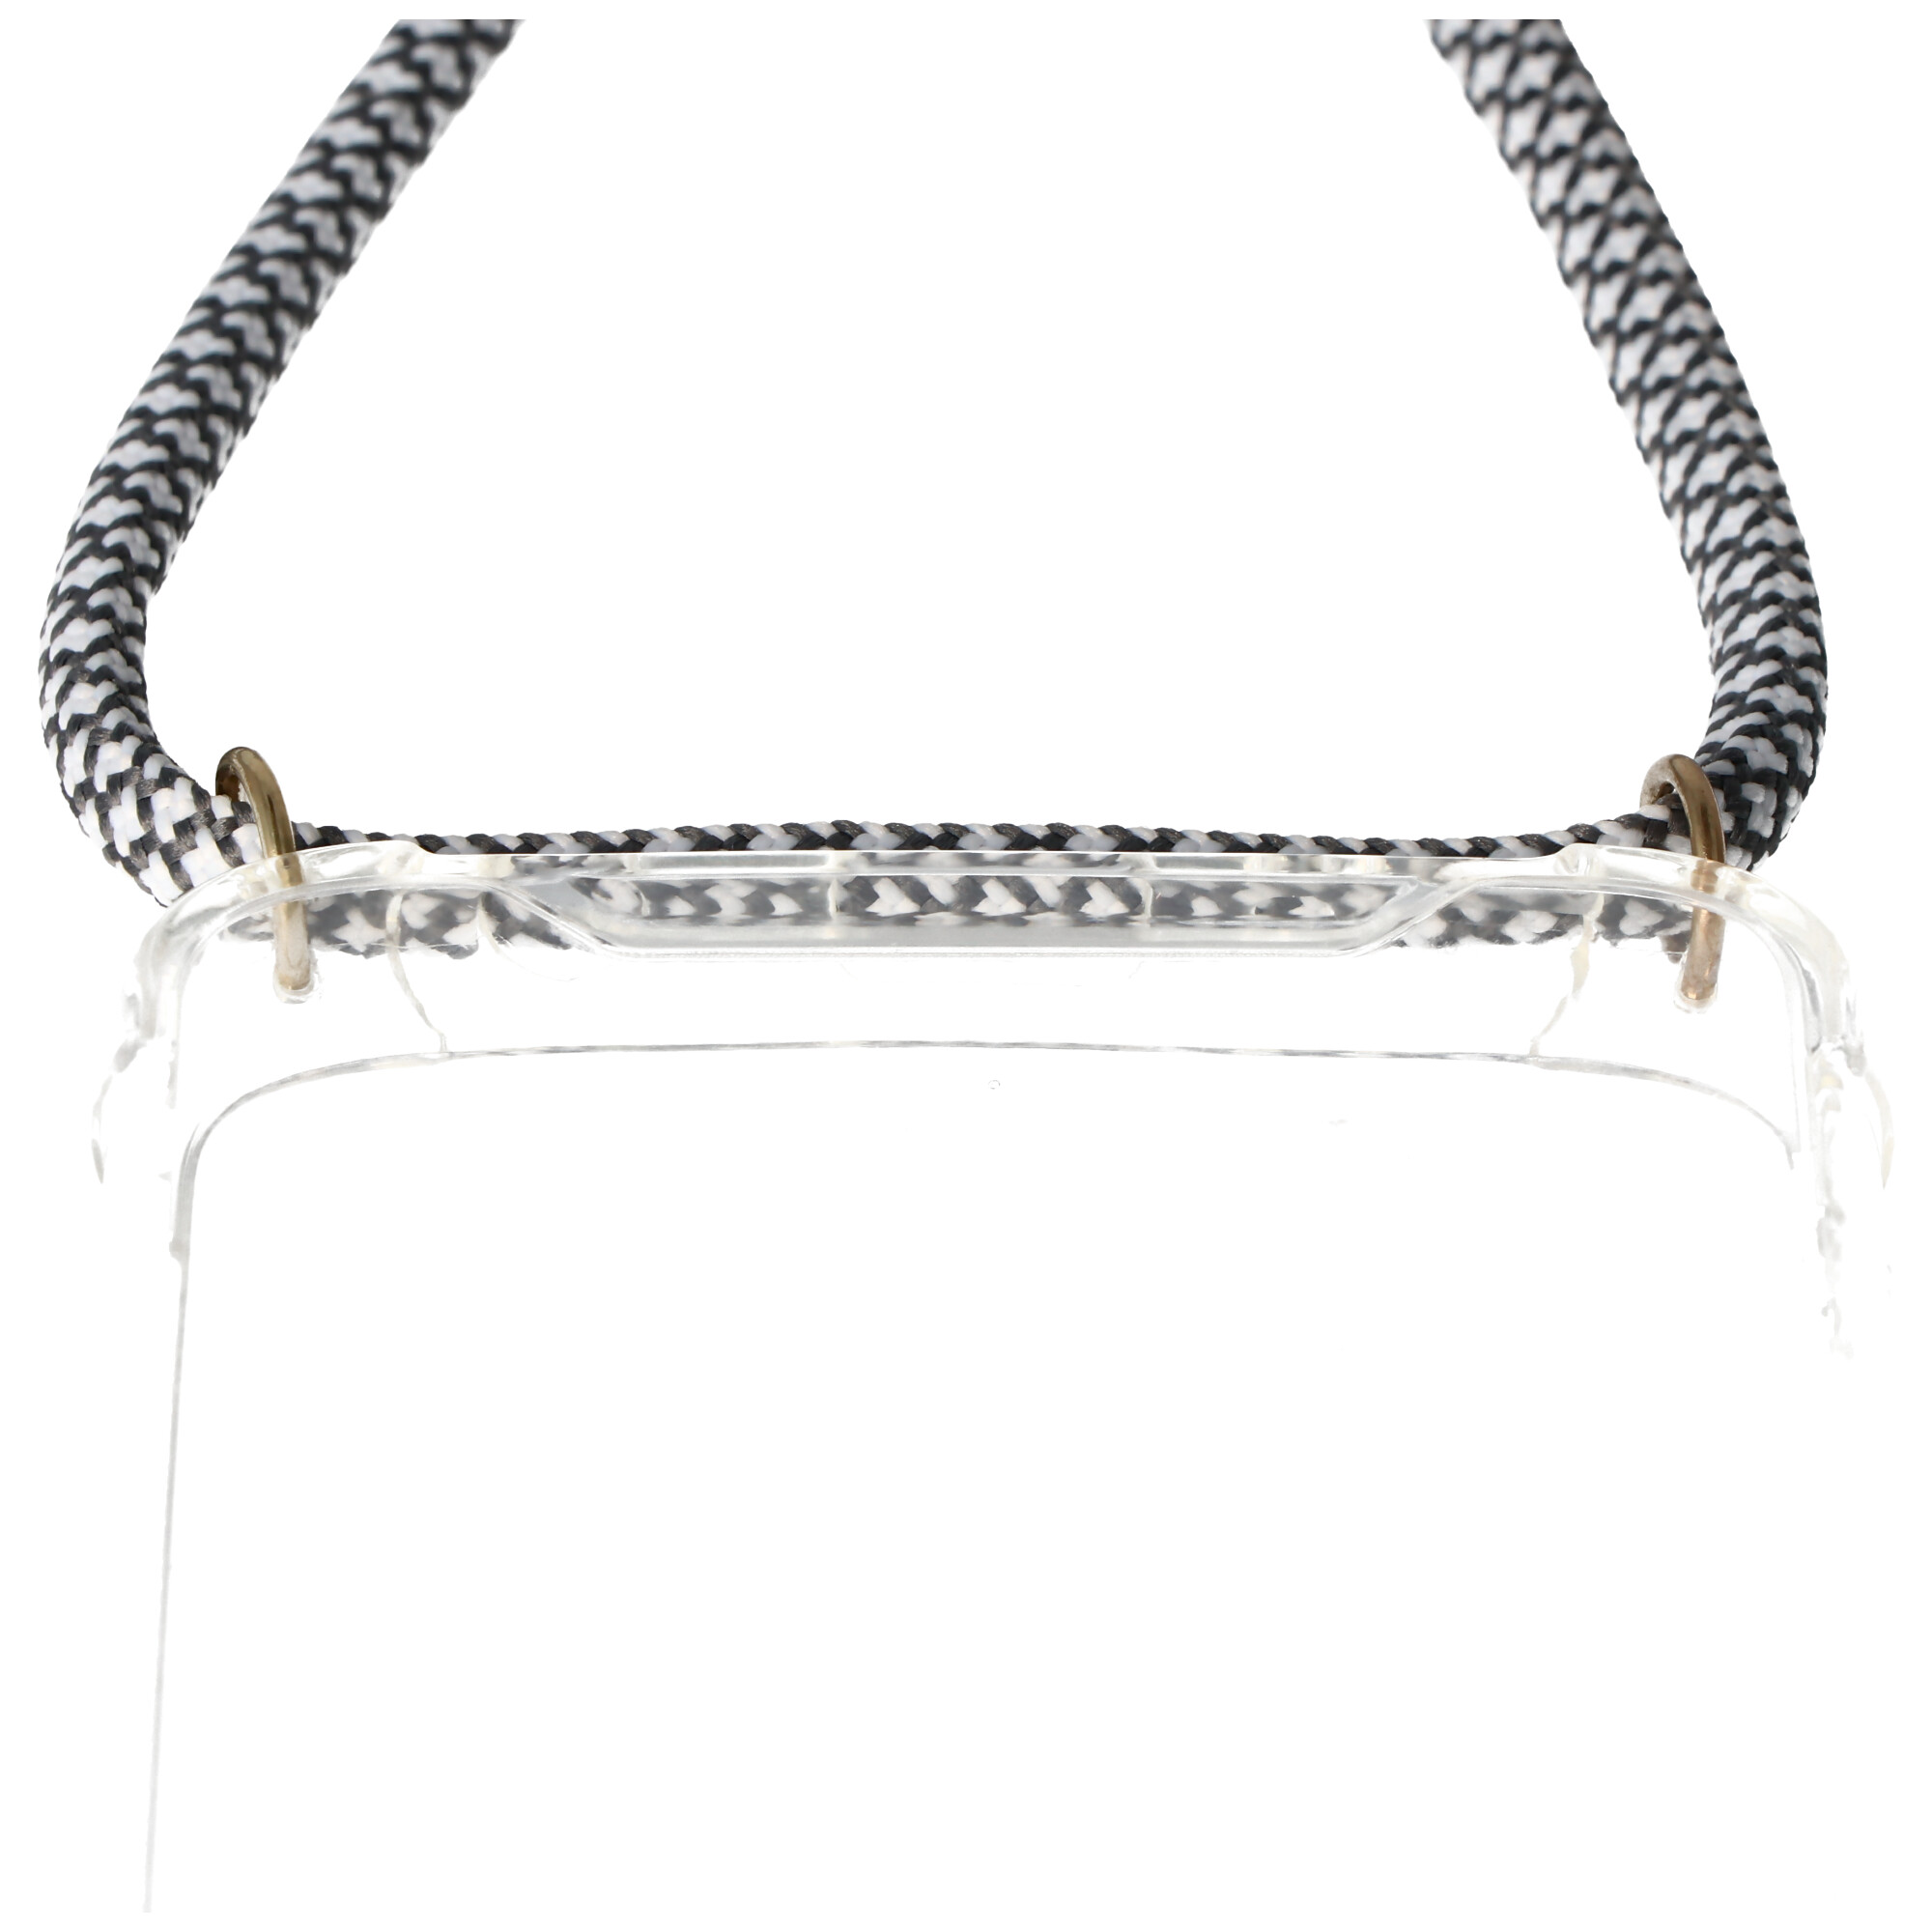 Necklace Case passend für iPhone 11 PRO MAX, Smartphonehülle mit Kordel grau,weiß zum Umhängen